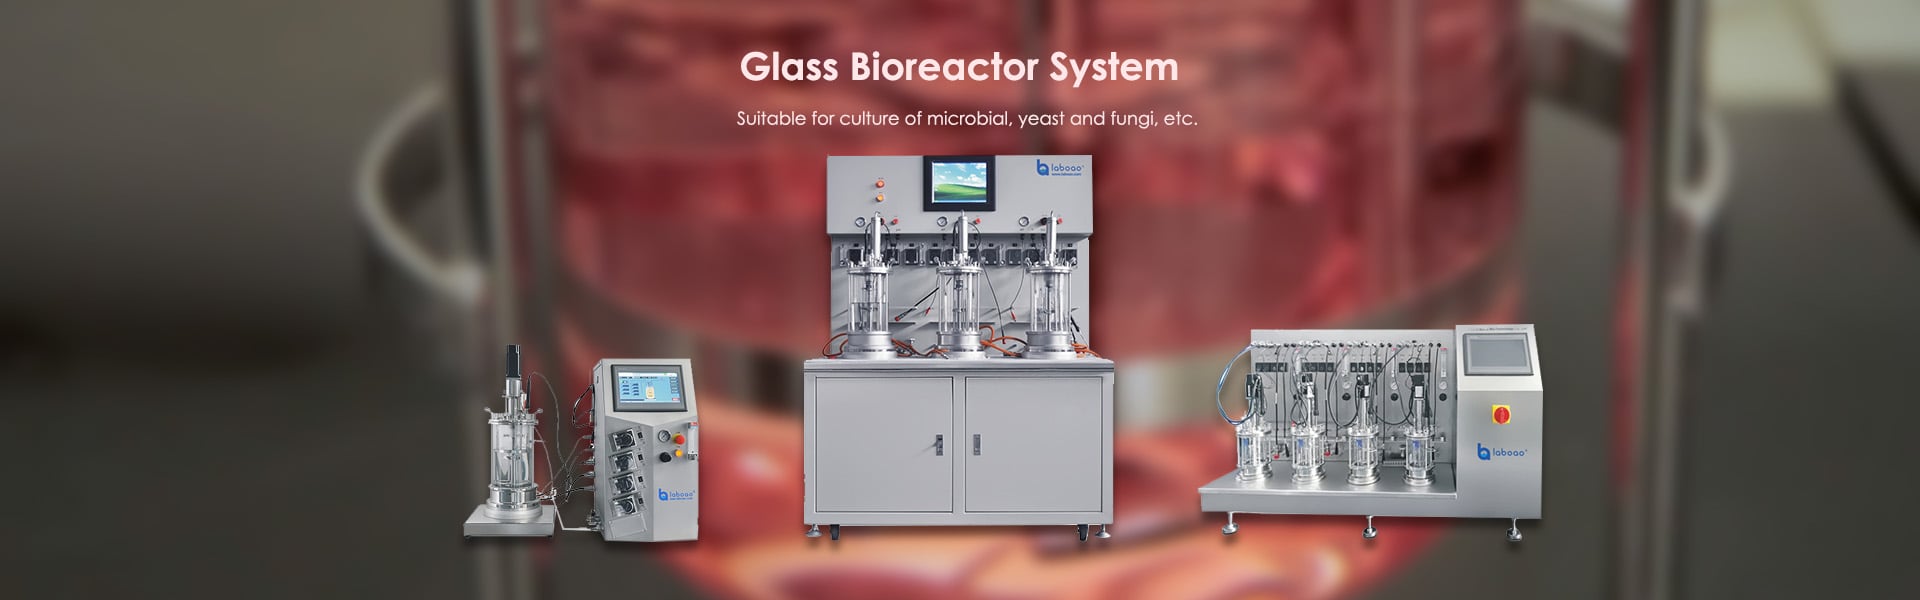 banner of glass bioreactor fermenter